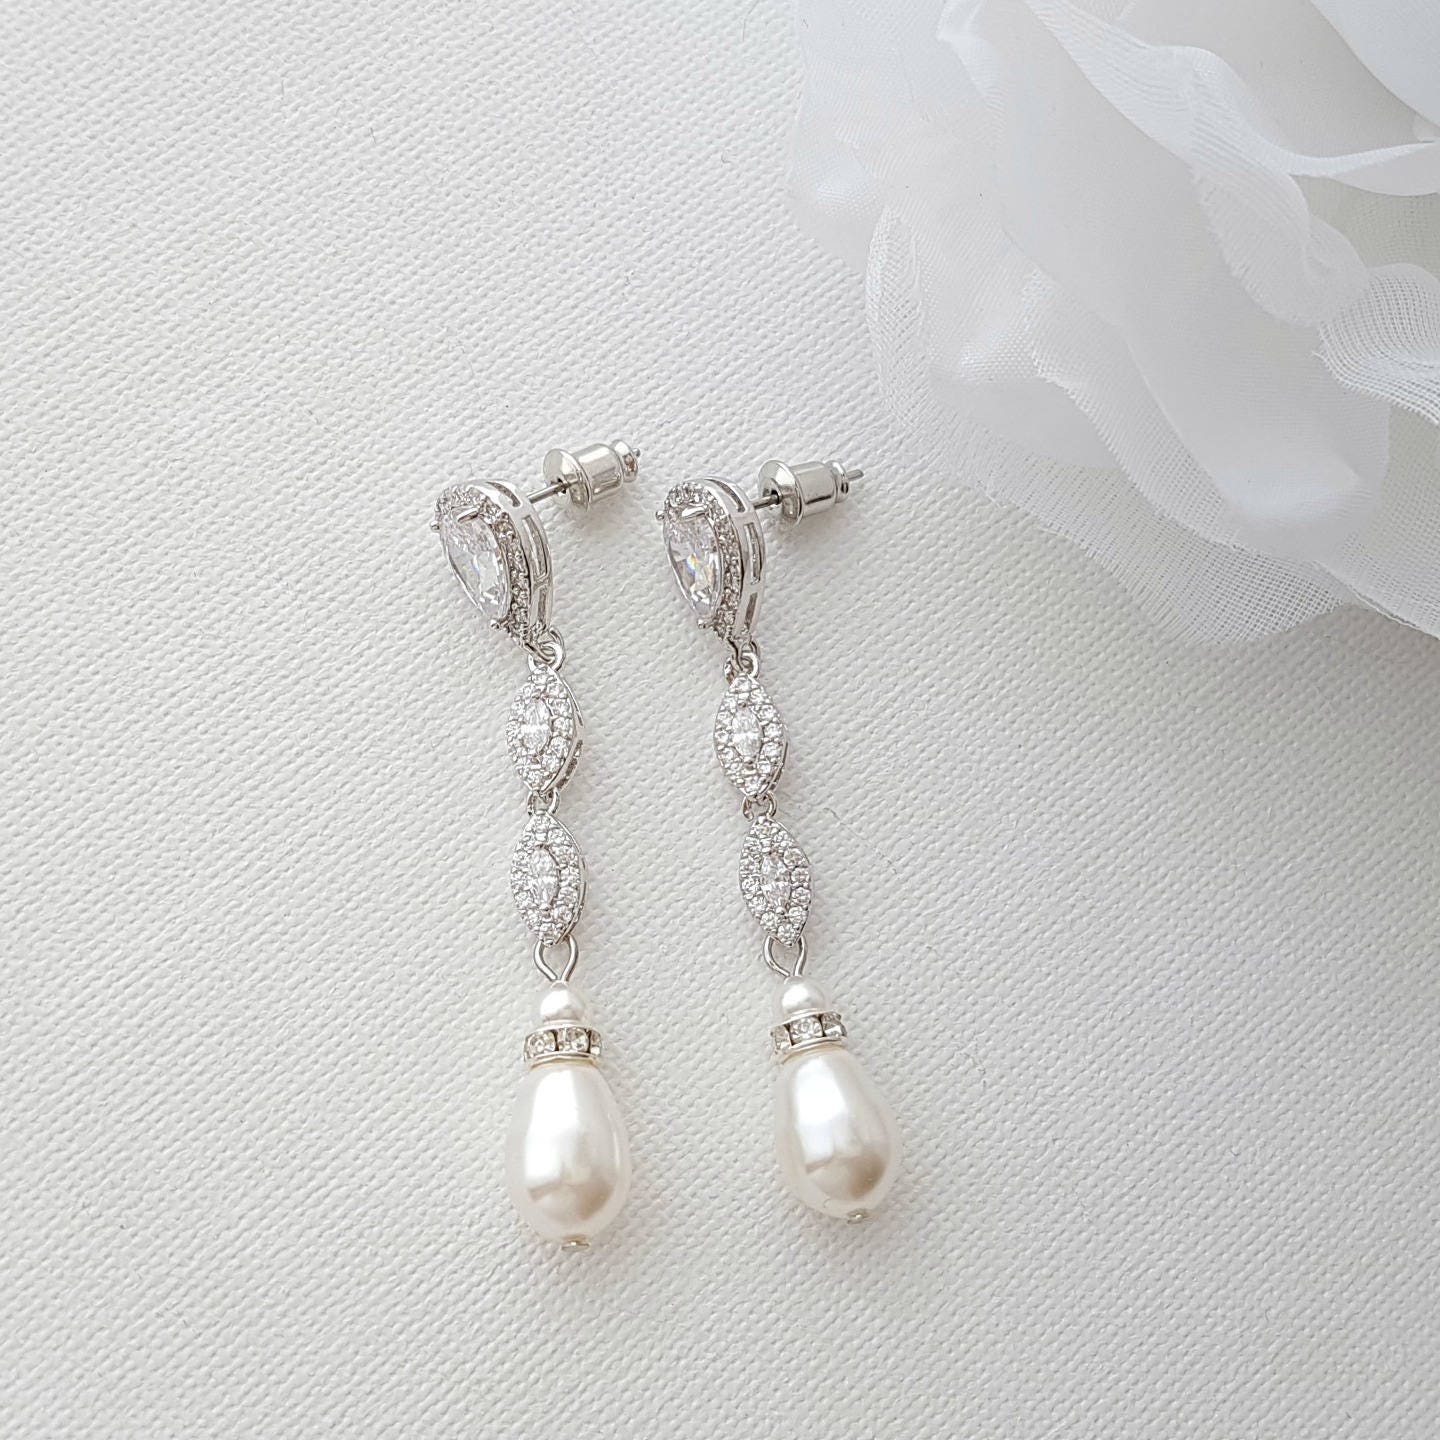 Long Bridal Earrings Crystal Wedding Earrings Pearl Drop | Etsy